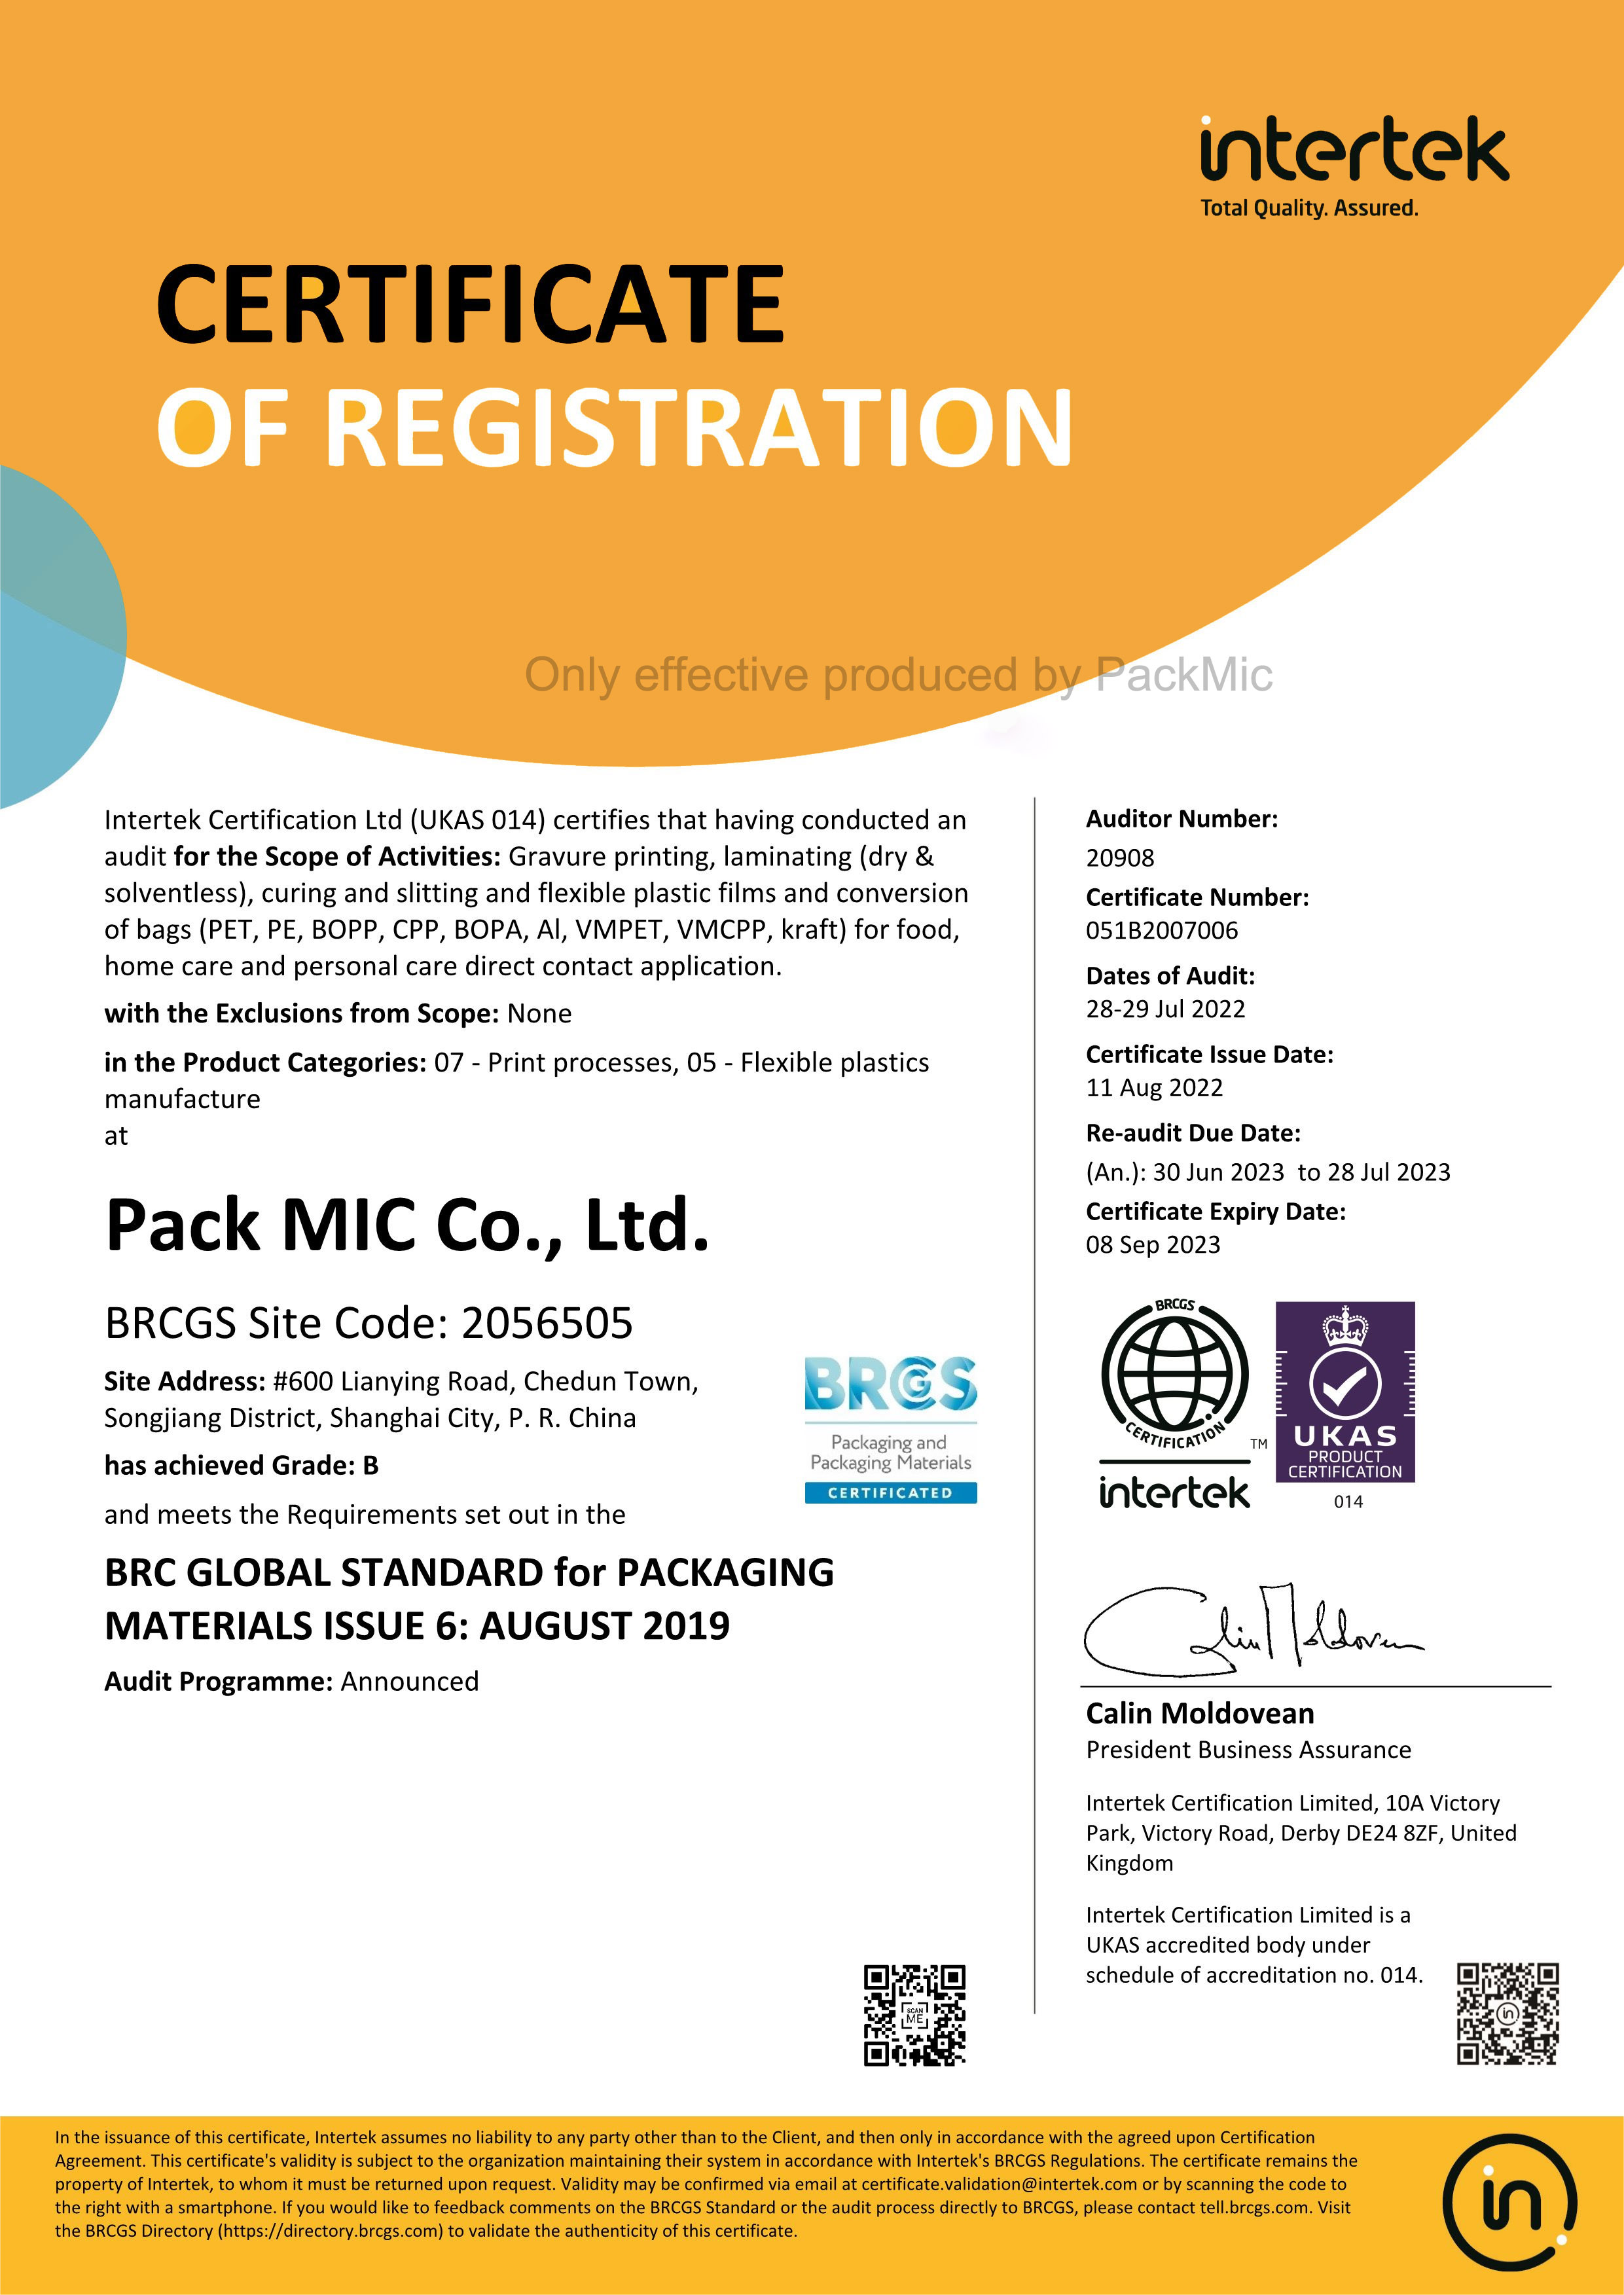 Packmic je prošao godišnju reviziju interteta.Dobili smo novi BRCGS certifikat.